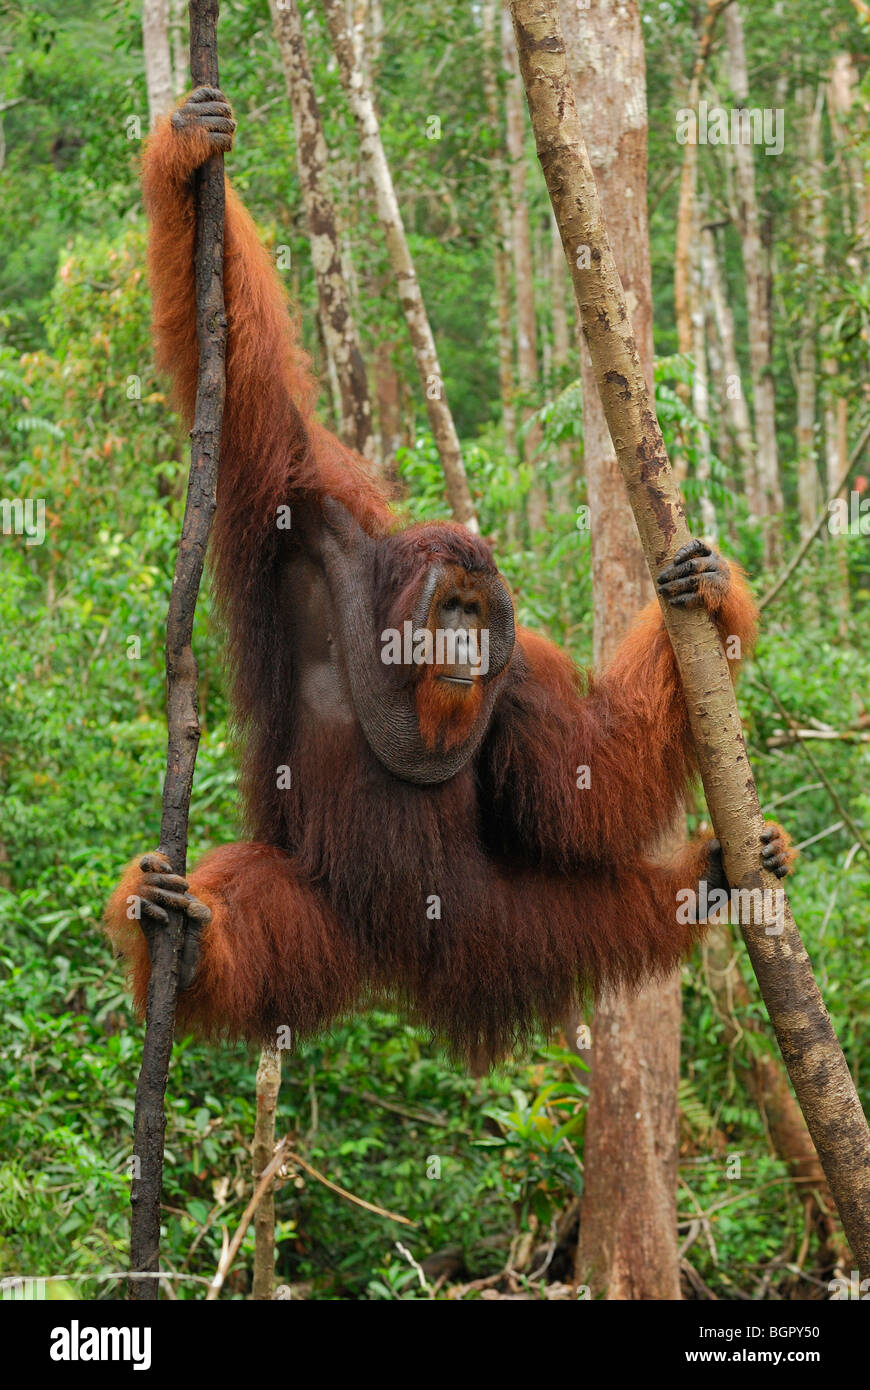 L'orang-outan de Bornéo (Pongo pygmaeus), homme pendaison, Camp Leaky, parc national de Tanjung Puting, Kalimantan, Bornéo, Indonésie Banque D'Images